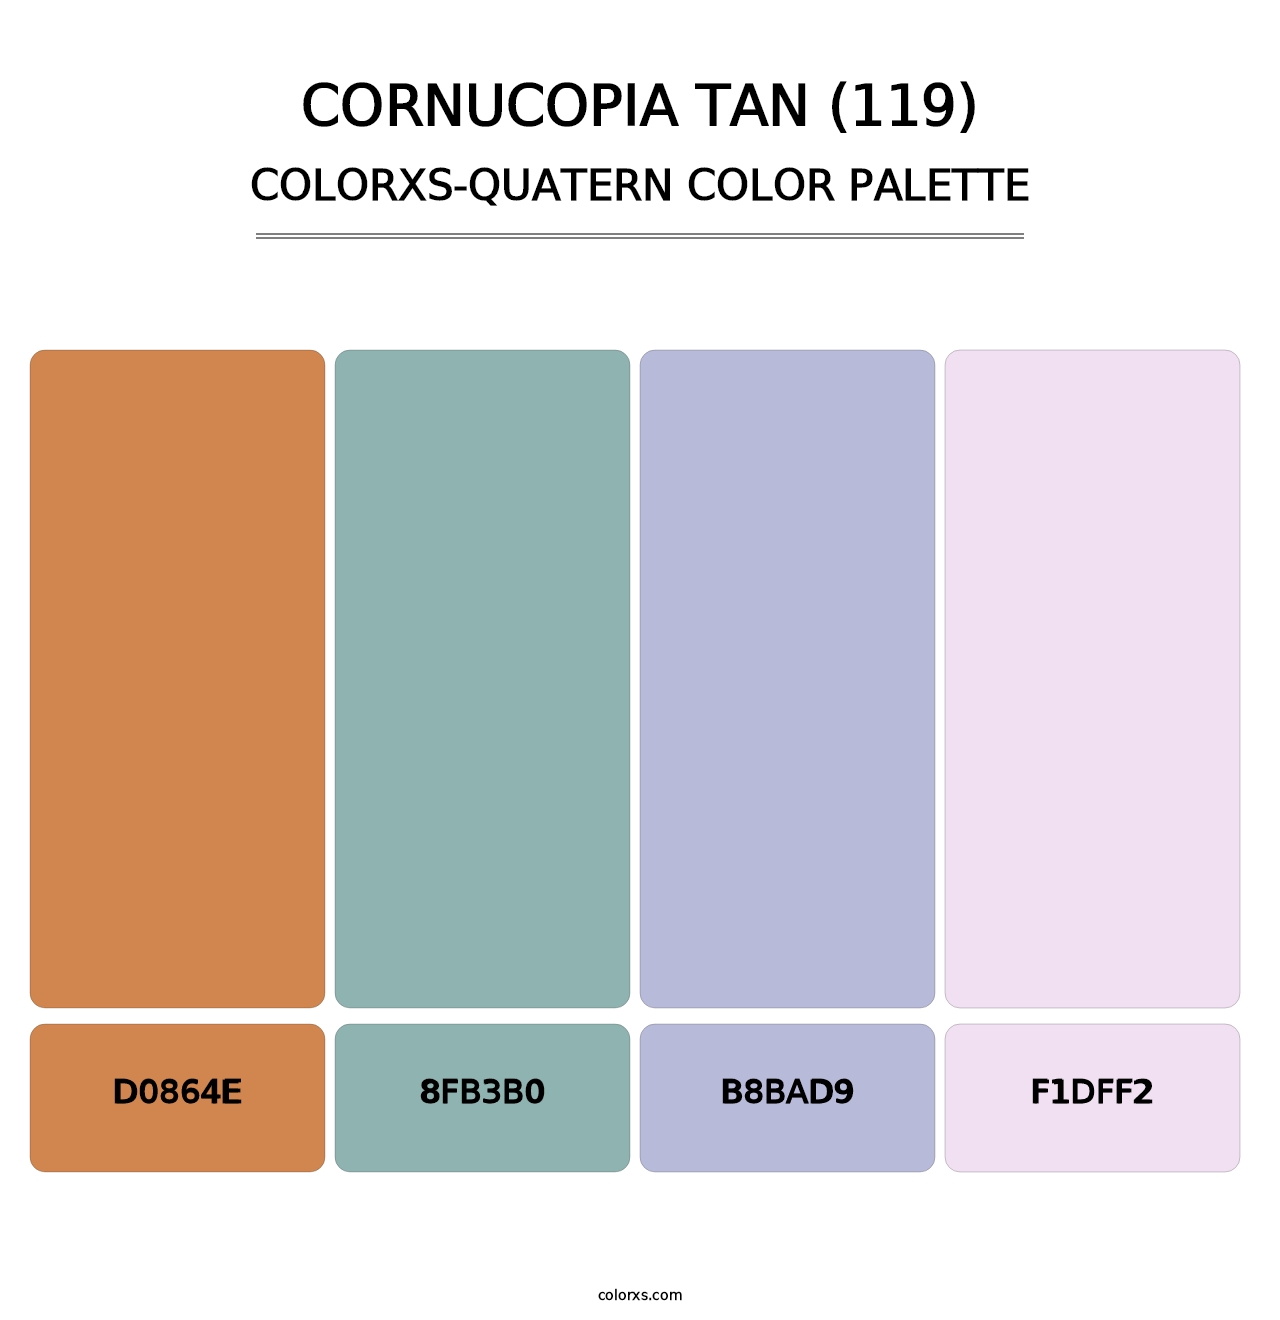 Cornucopia Tan (119) - Colorxs Quatern Palette